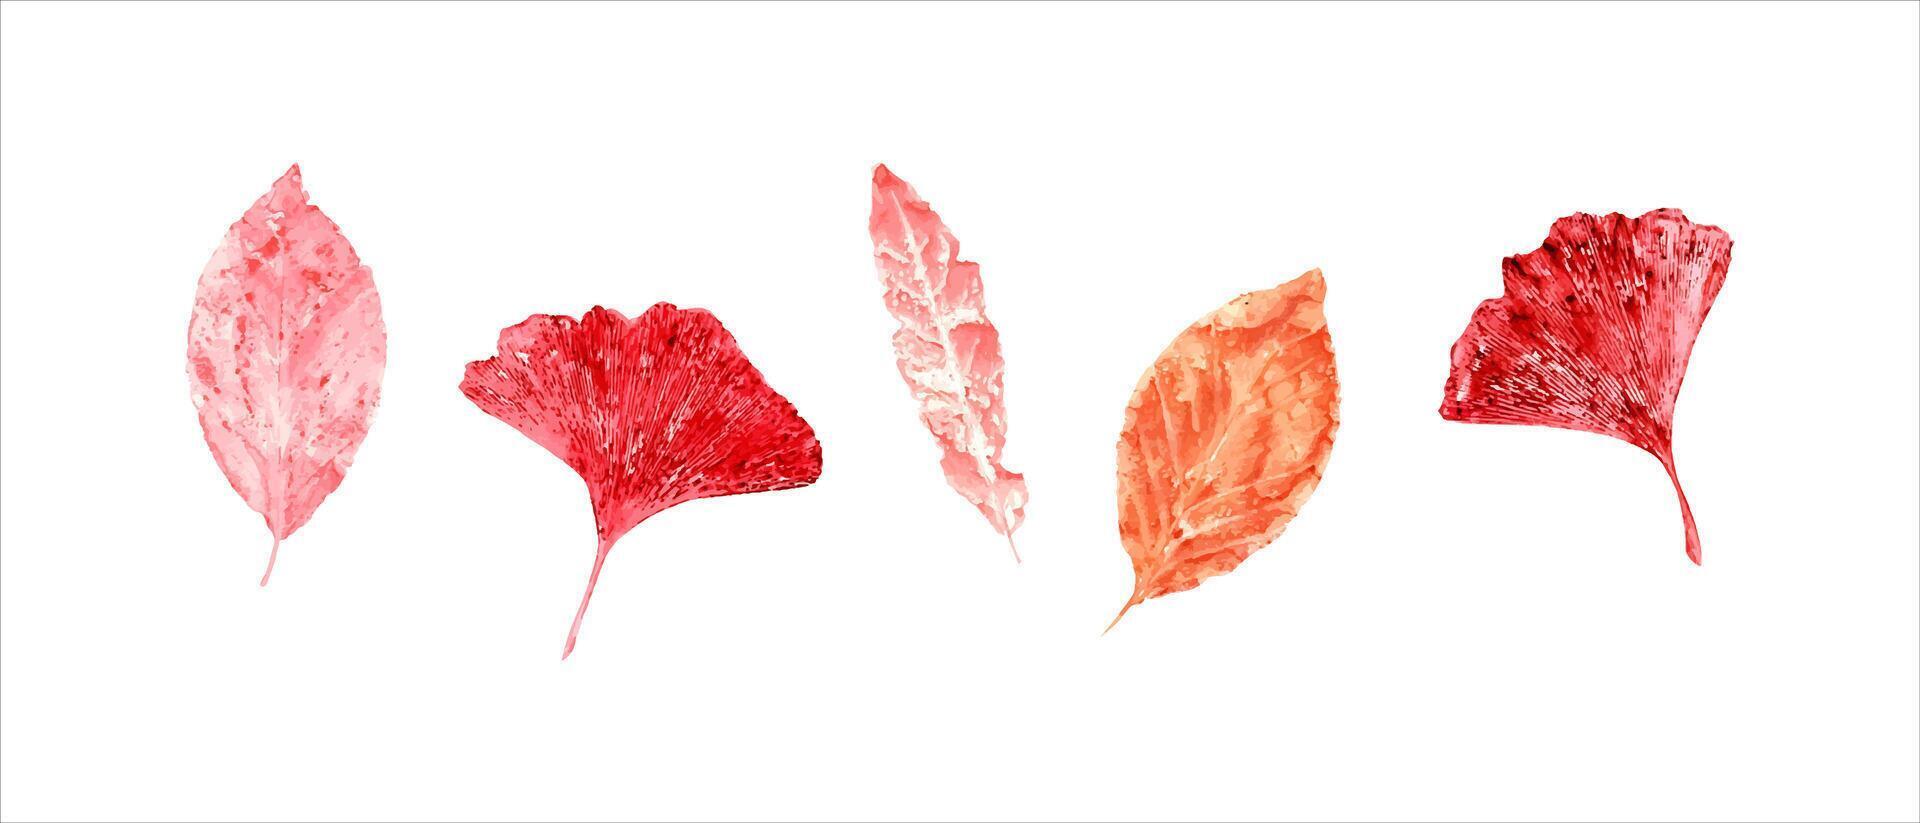 einstellen von Herbst rot Rosa Blätter. abstrakt Blatt Abdrücke. fallen trocken Blätter. Aquarell Illustration von bunt Blatt Silhouetten zum Poster, Textur, rahmen, Karten vektor